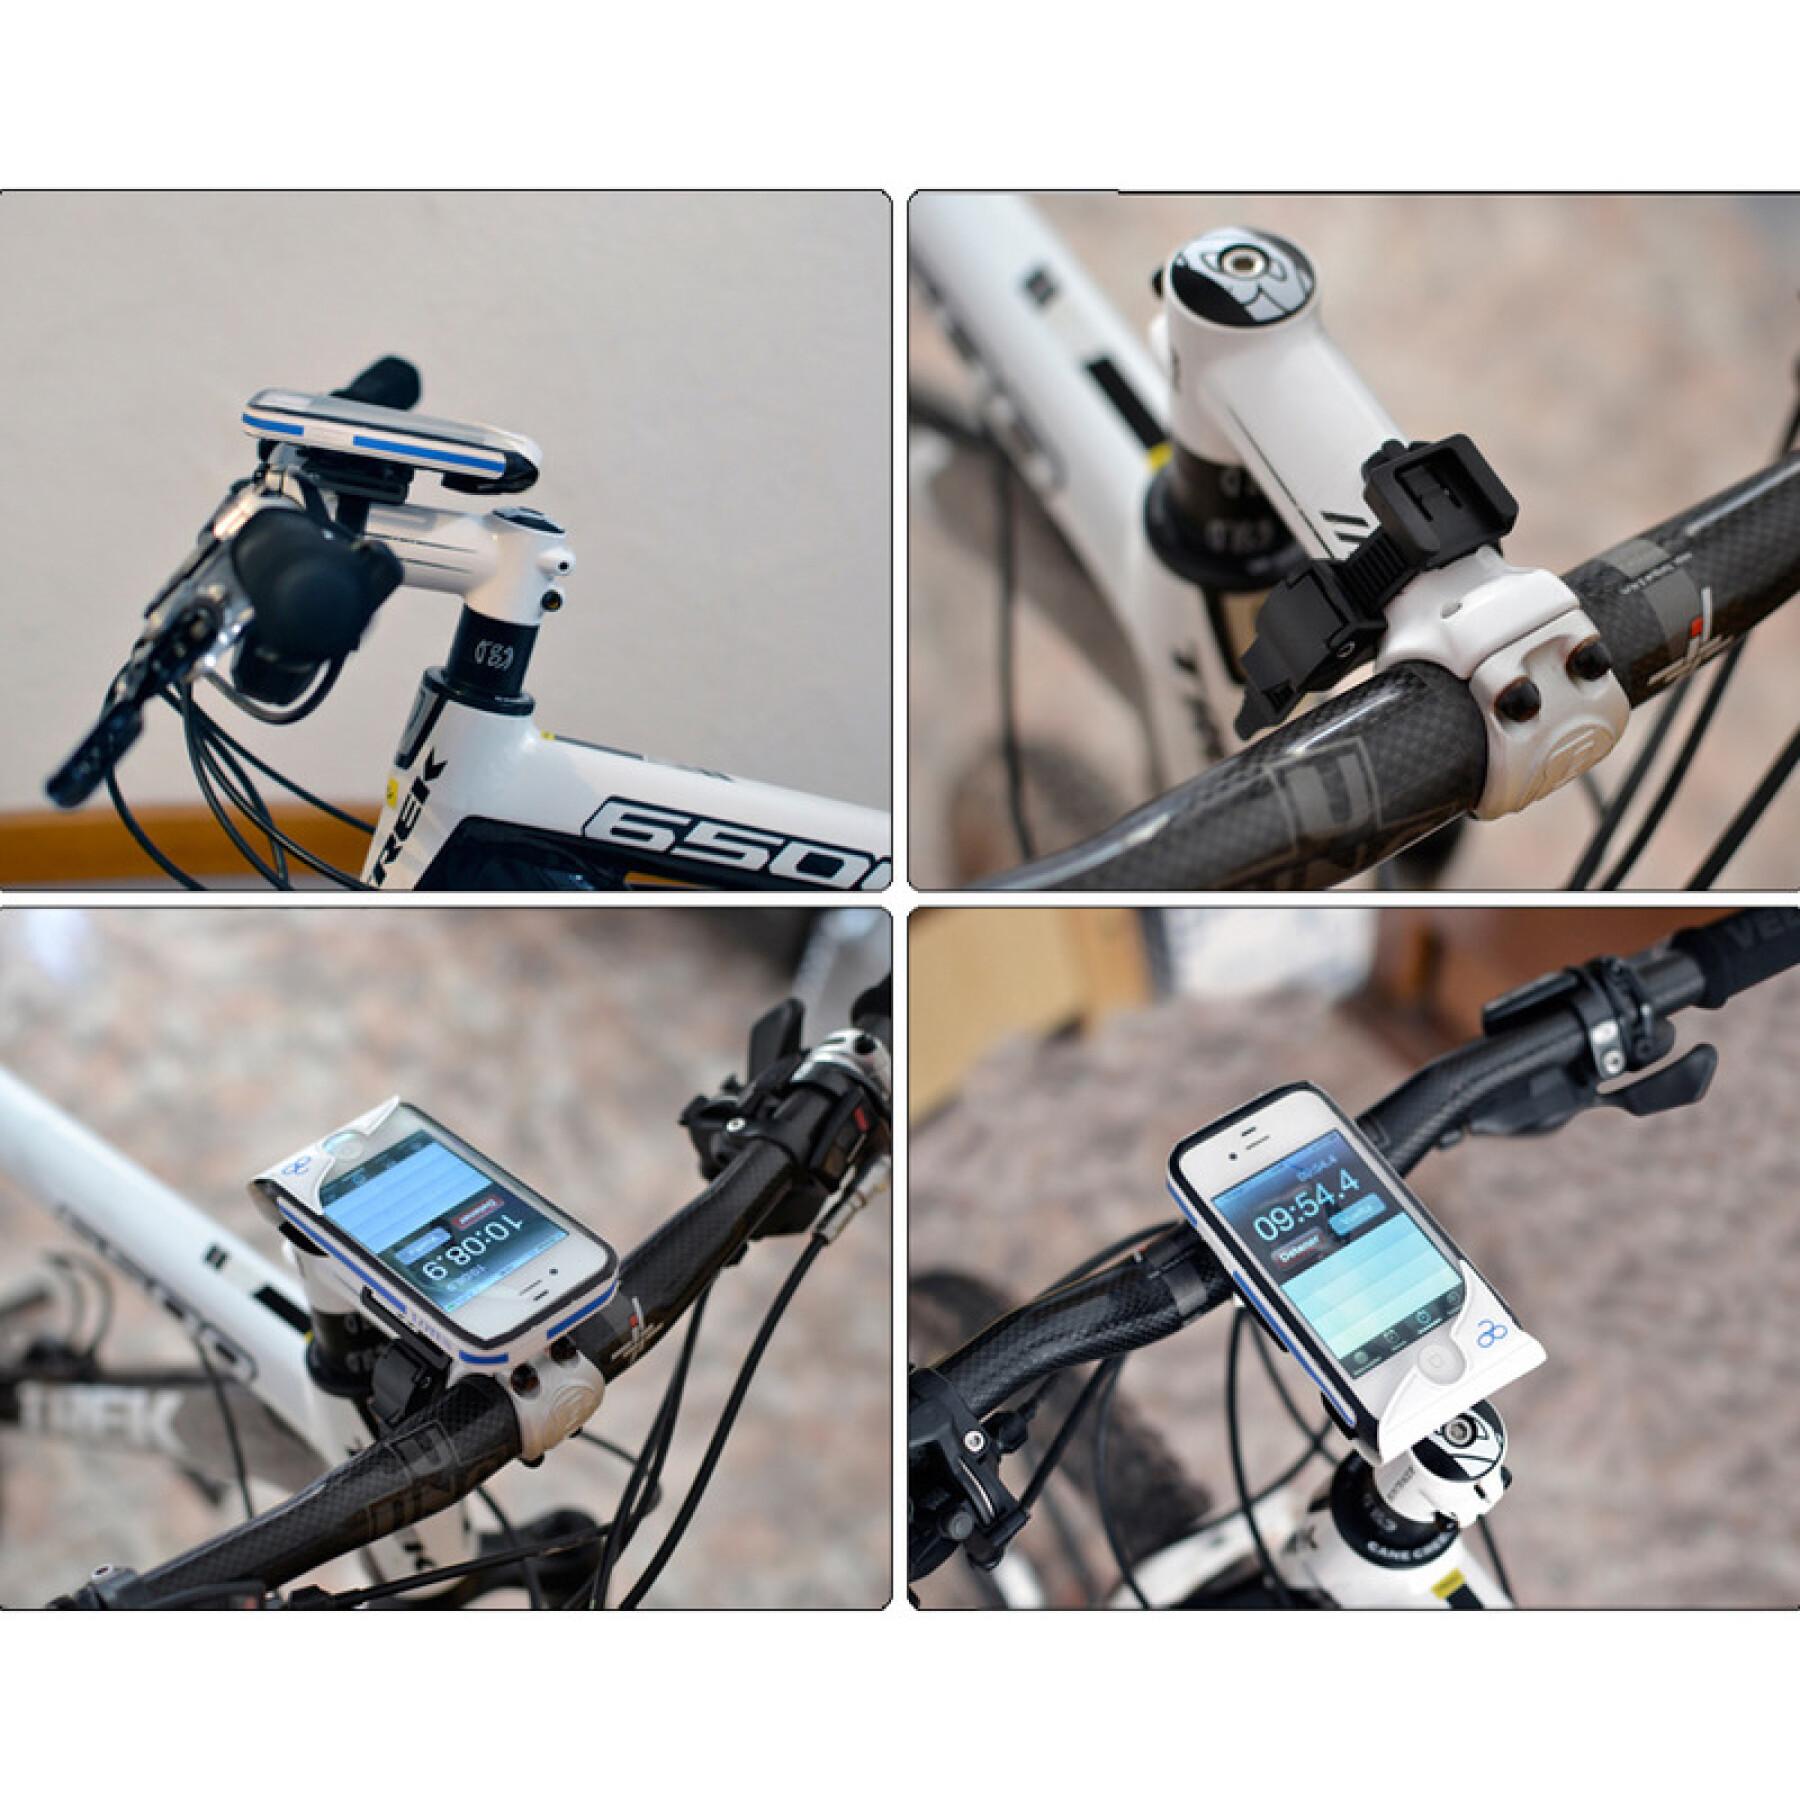 Tampa do Smartphone + kit de montagem iphone 4/4s V Bike